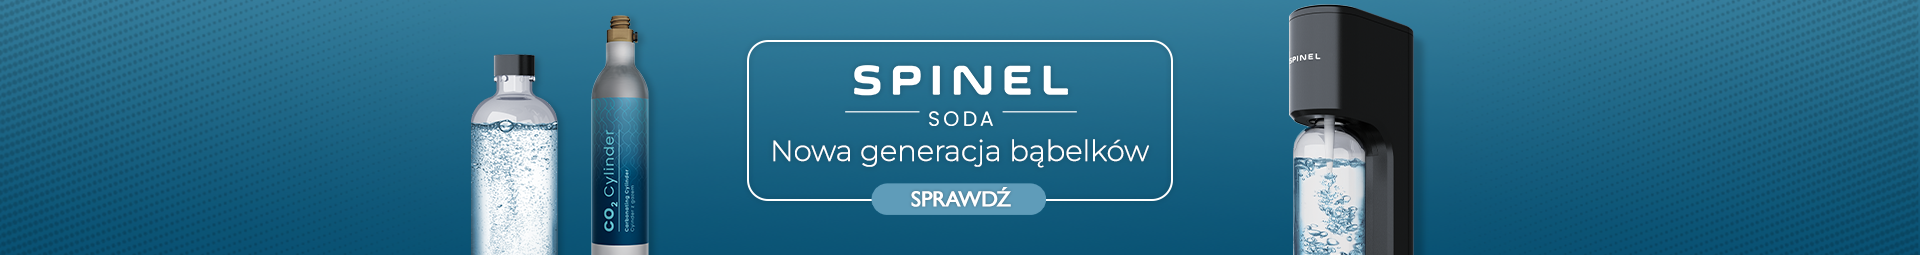 Spinel Soda - nowa generacja bąbelków